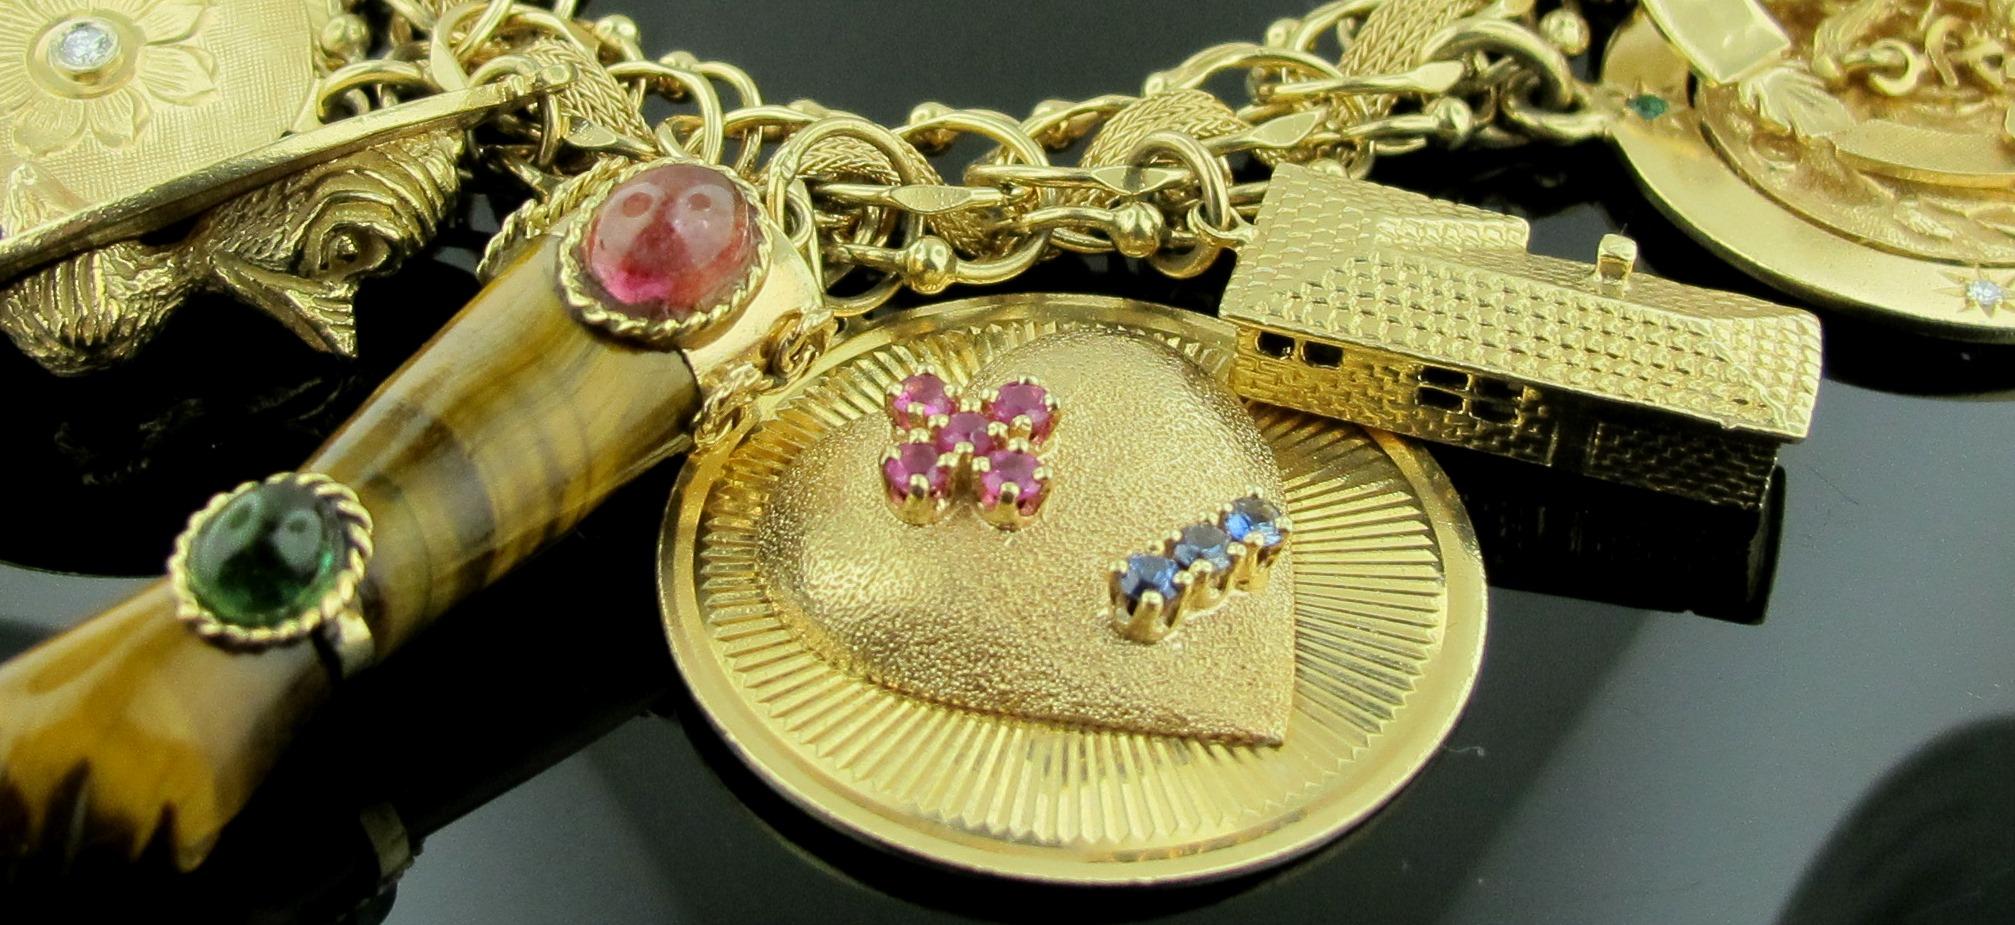 14 karat gold charms for bracelets